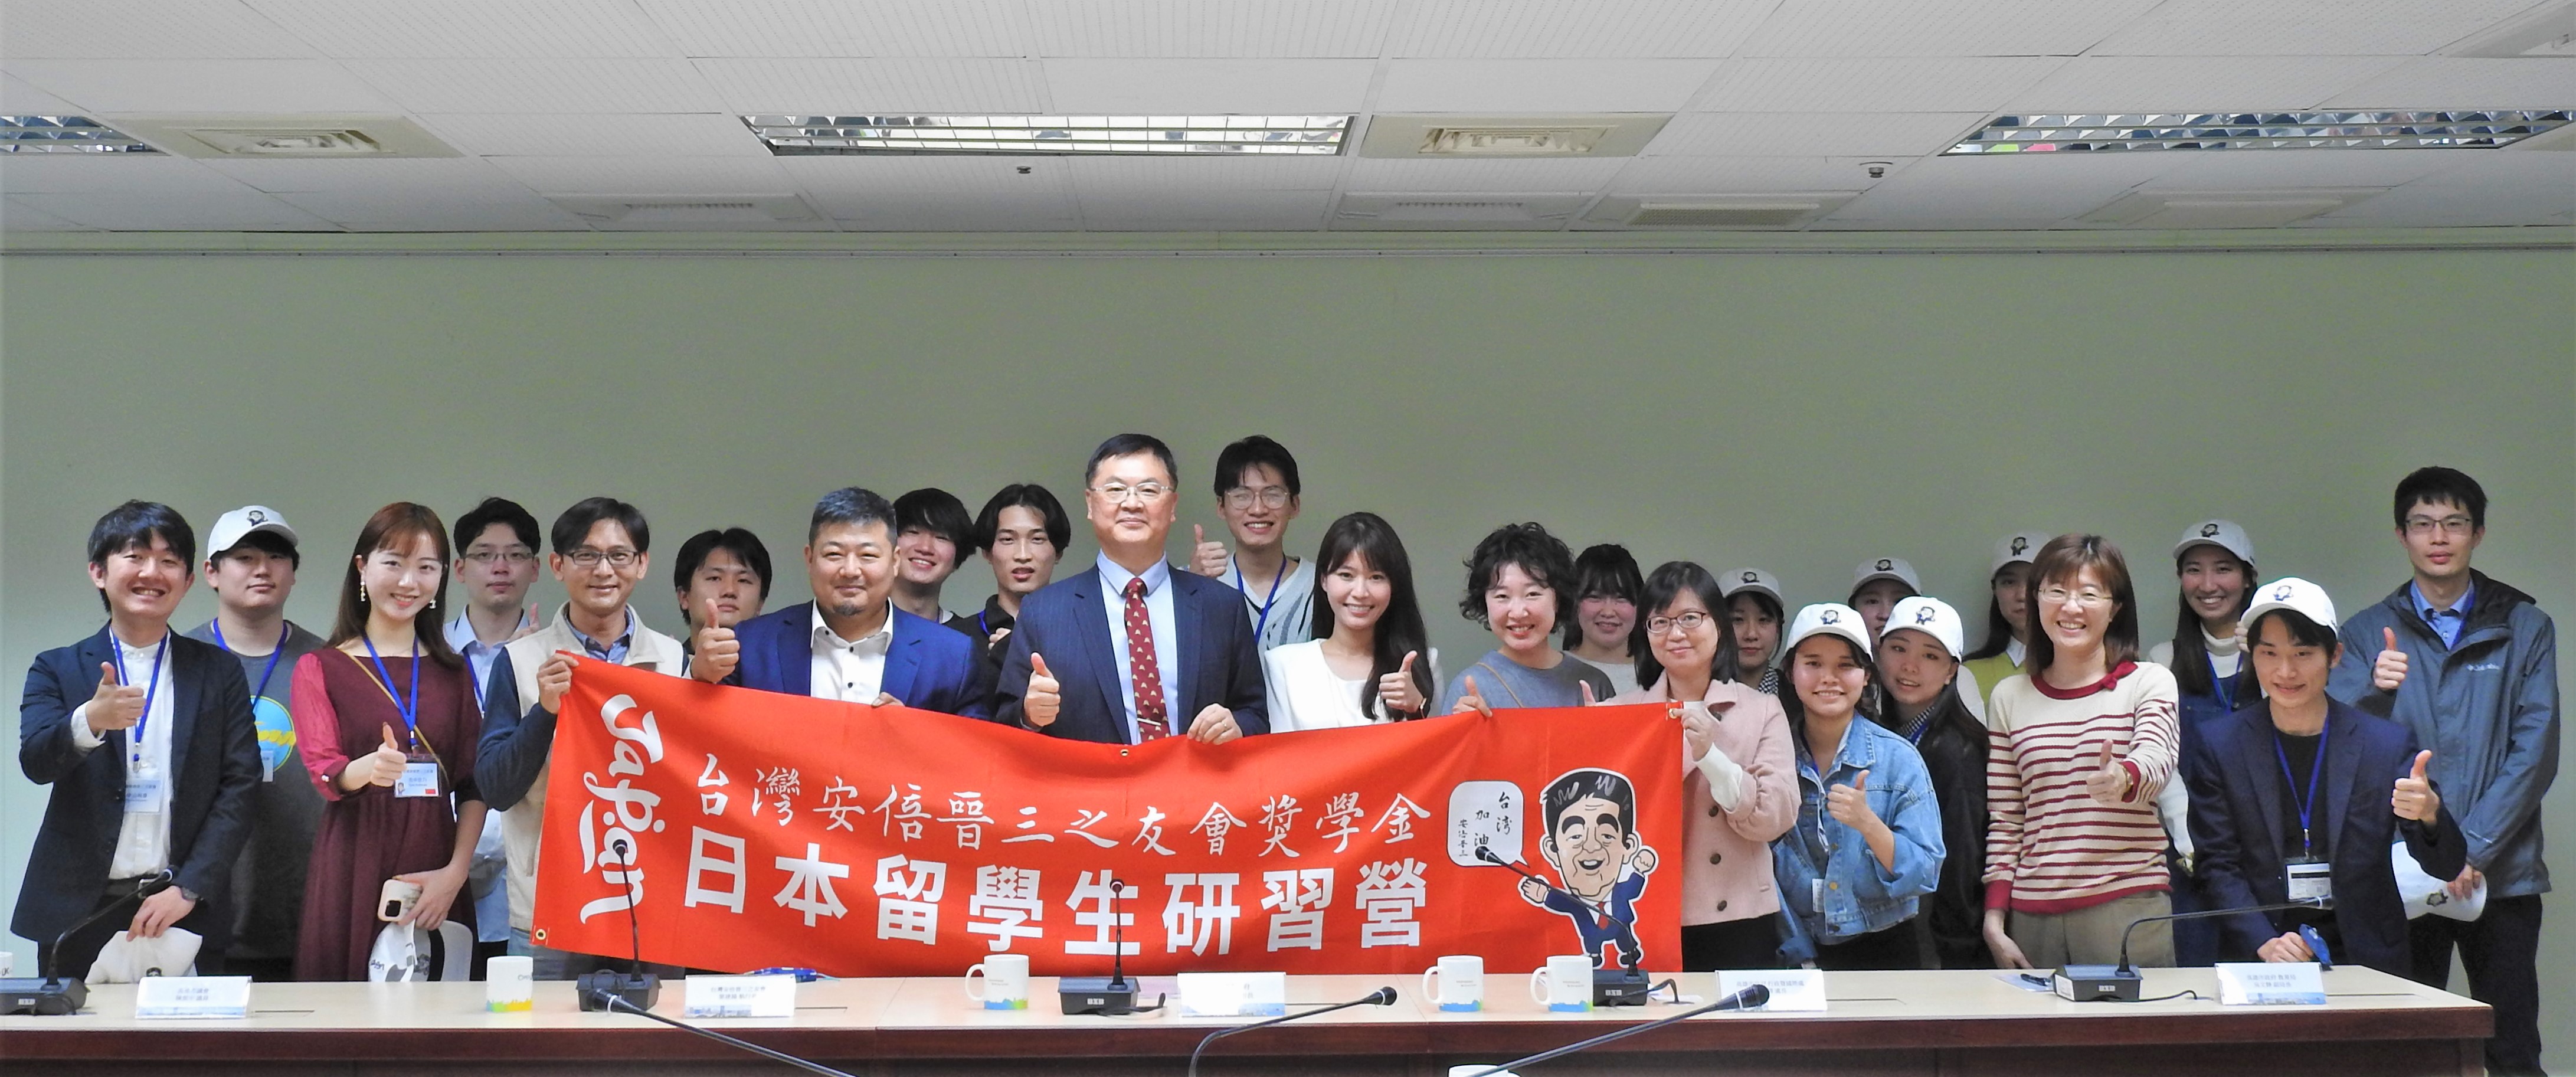 市府團隊歡迎台灣安倍晉三之友會獎學金日本留學生訪高